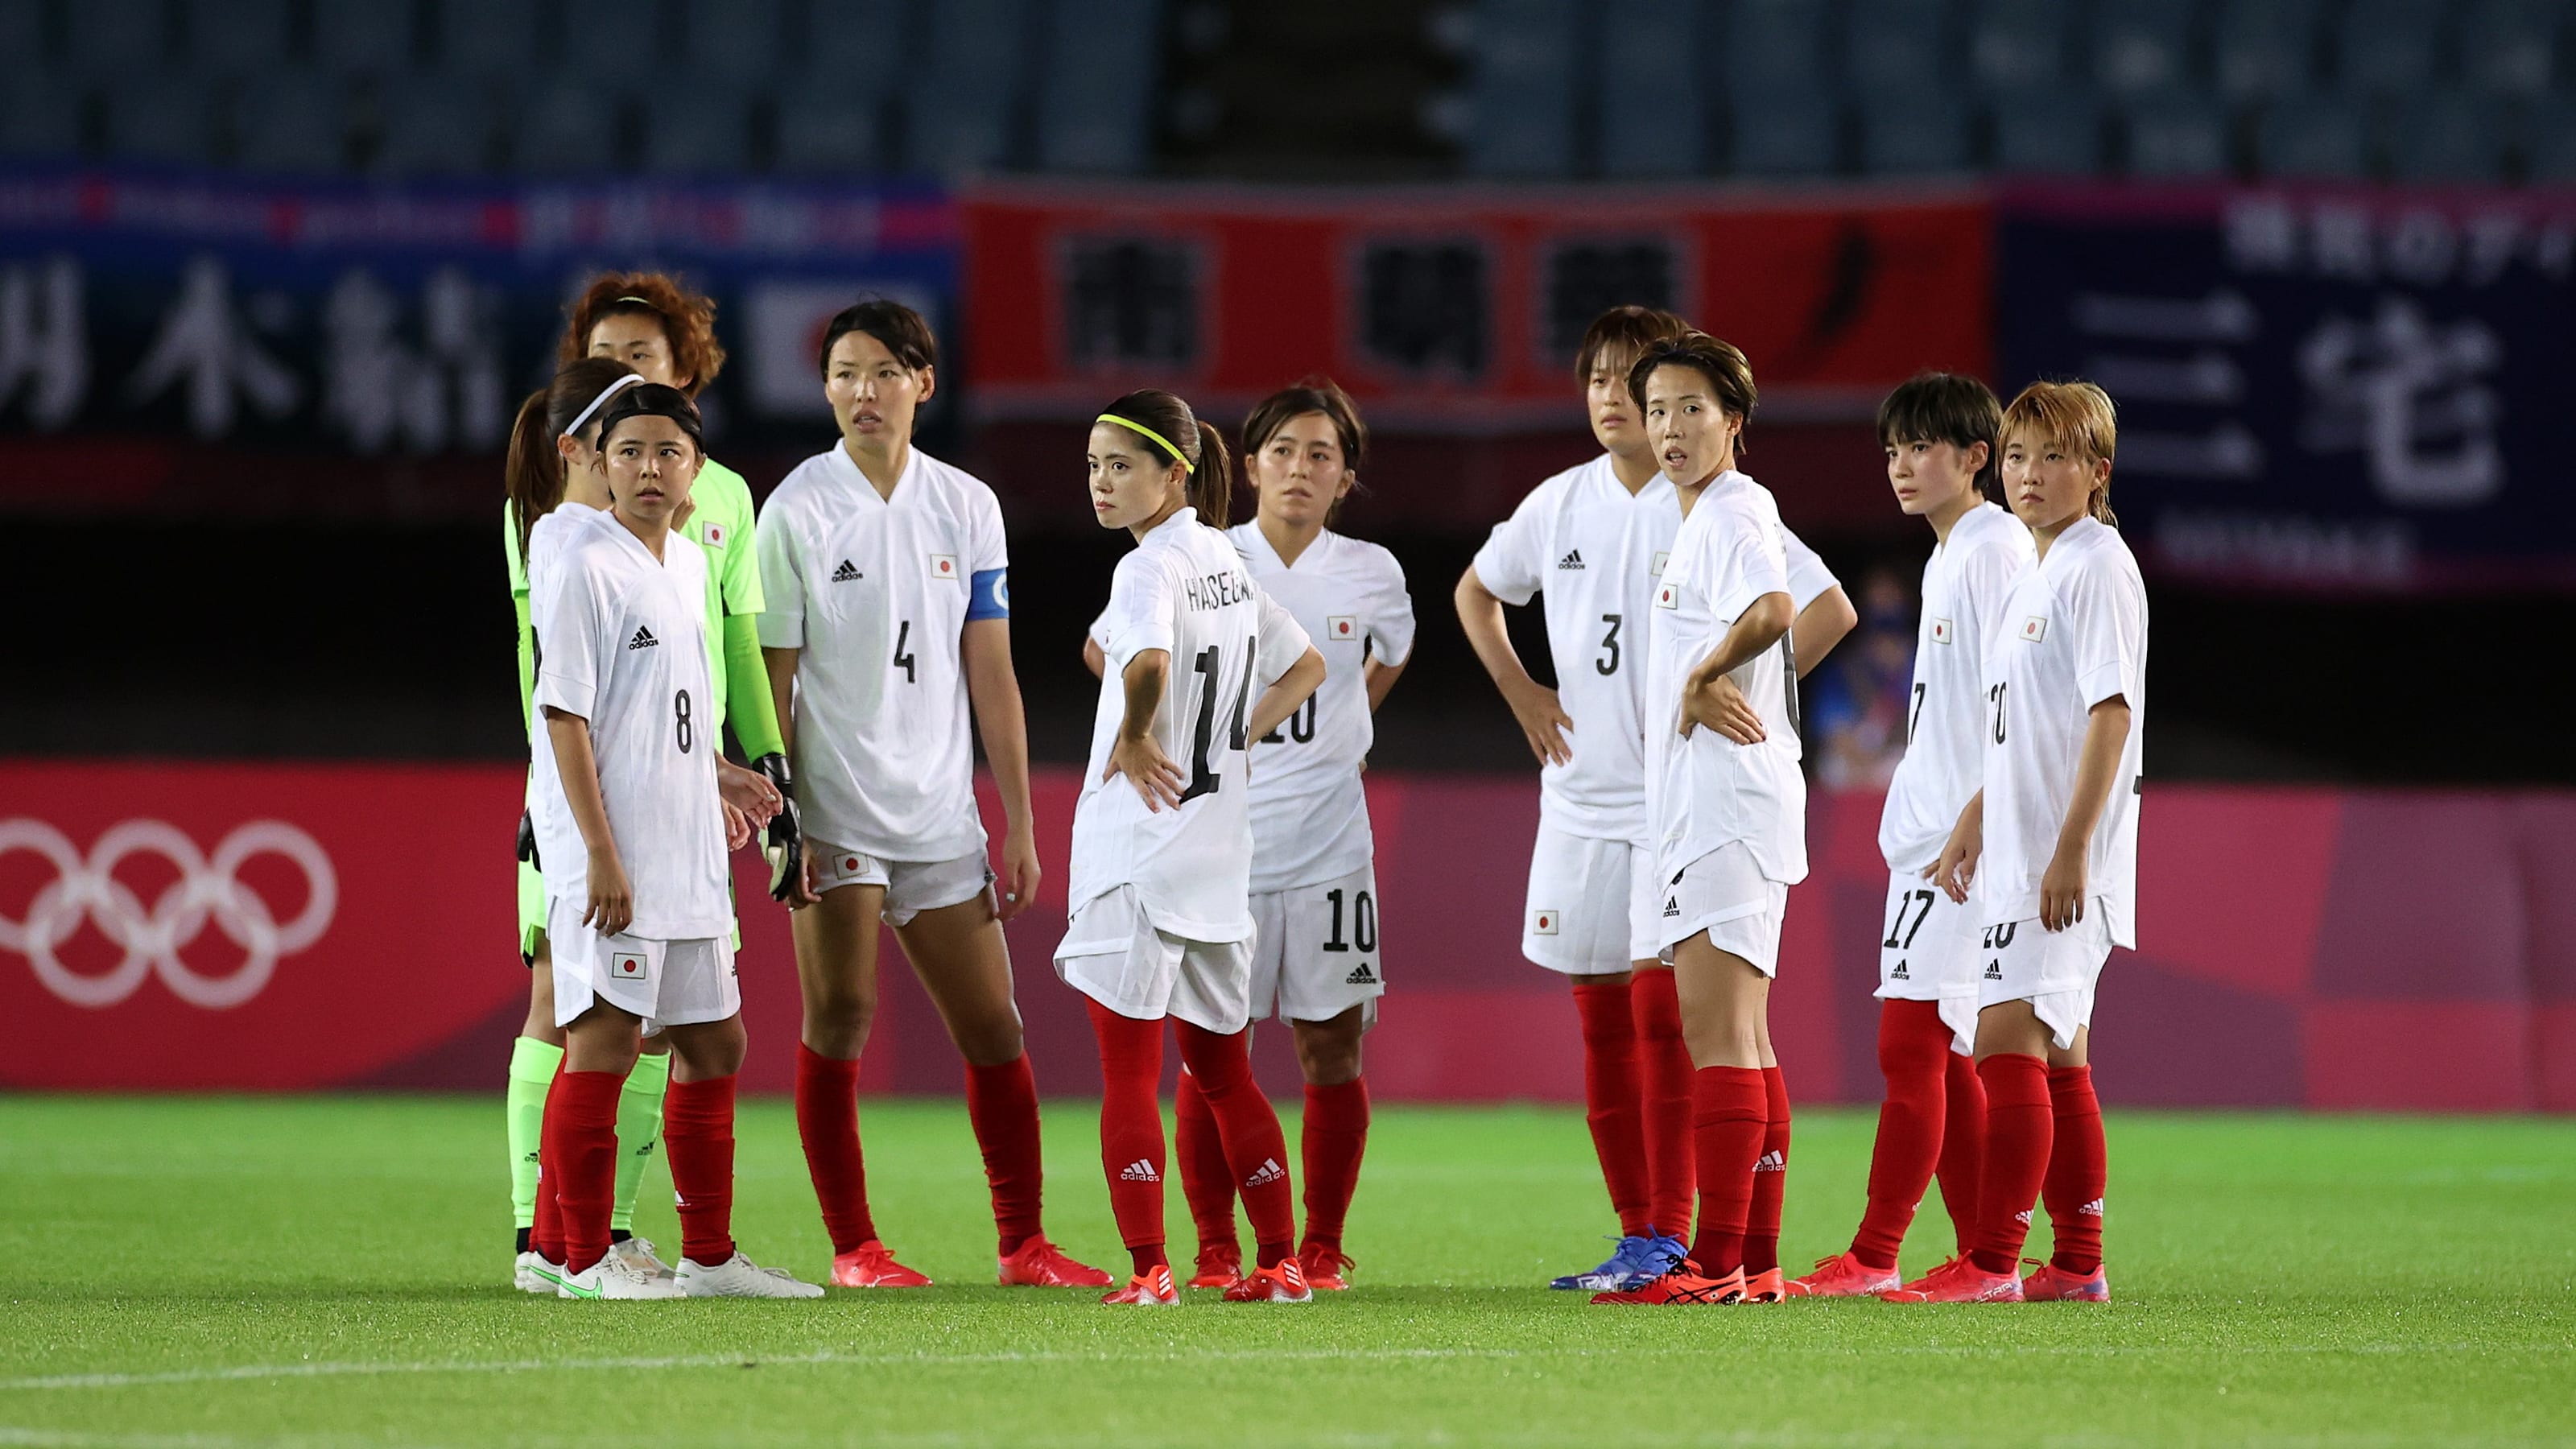 7月30日 東京五輪 サッカー競技 女子 準々決勝の放送予定 なでしこジャパンはスウェーデンと対戦